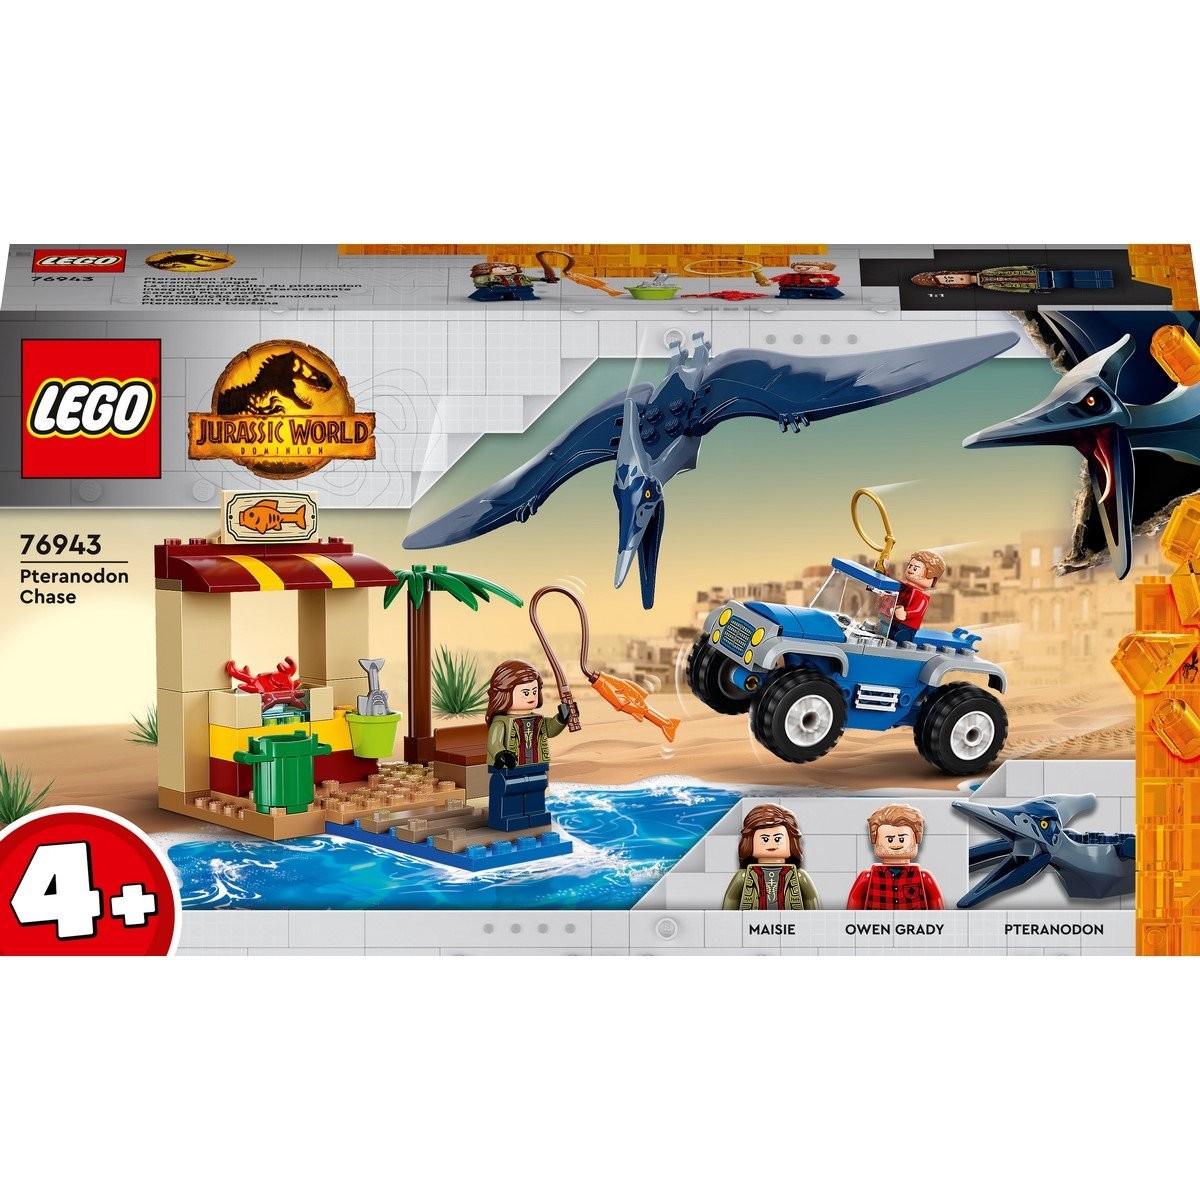 Course-poursuite du LEGO Jurassic World 76943 | La Grande La Réunion